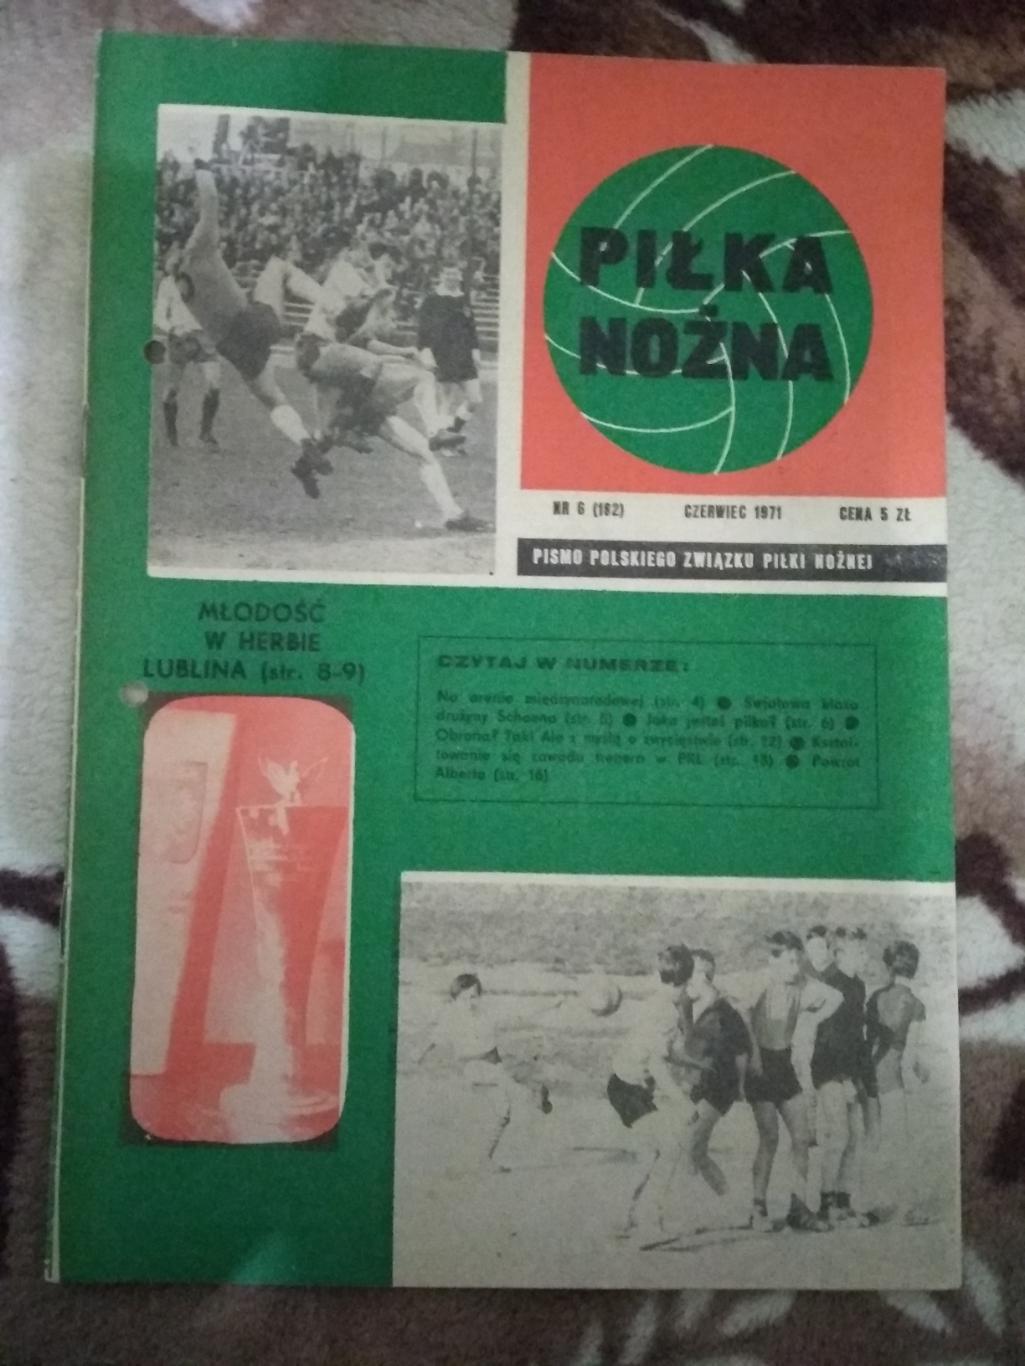 Газета.Футбол.Пилка ножна № 6 1971 г. (Польша).